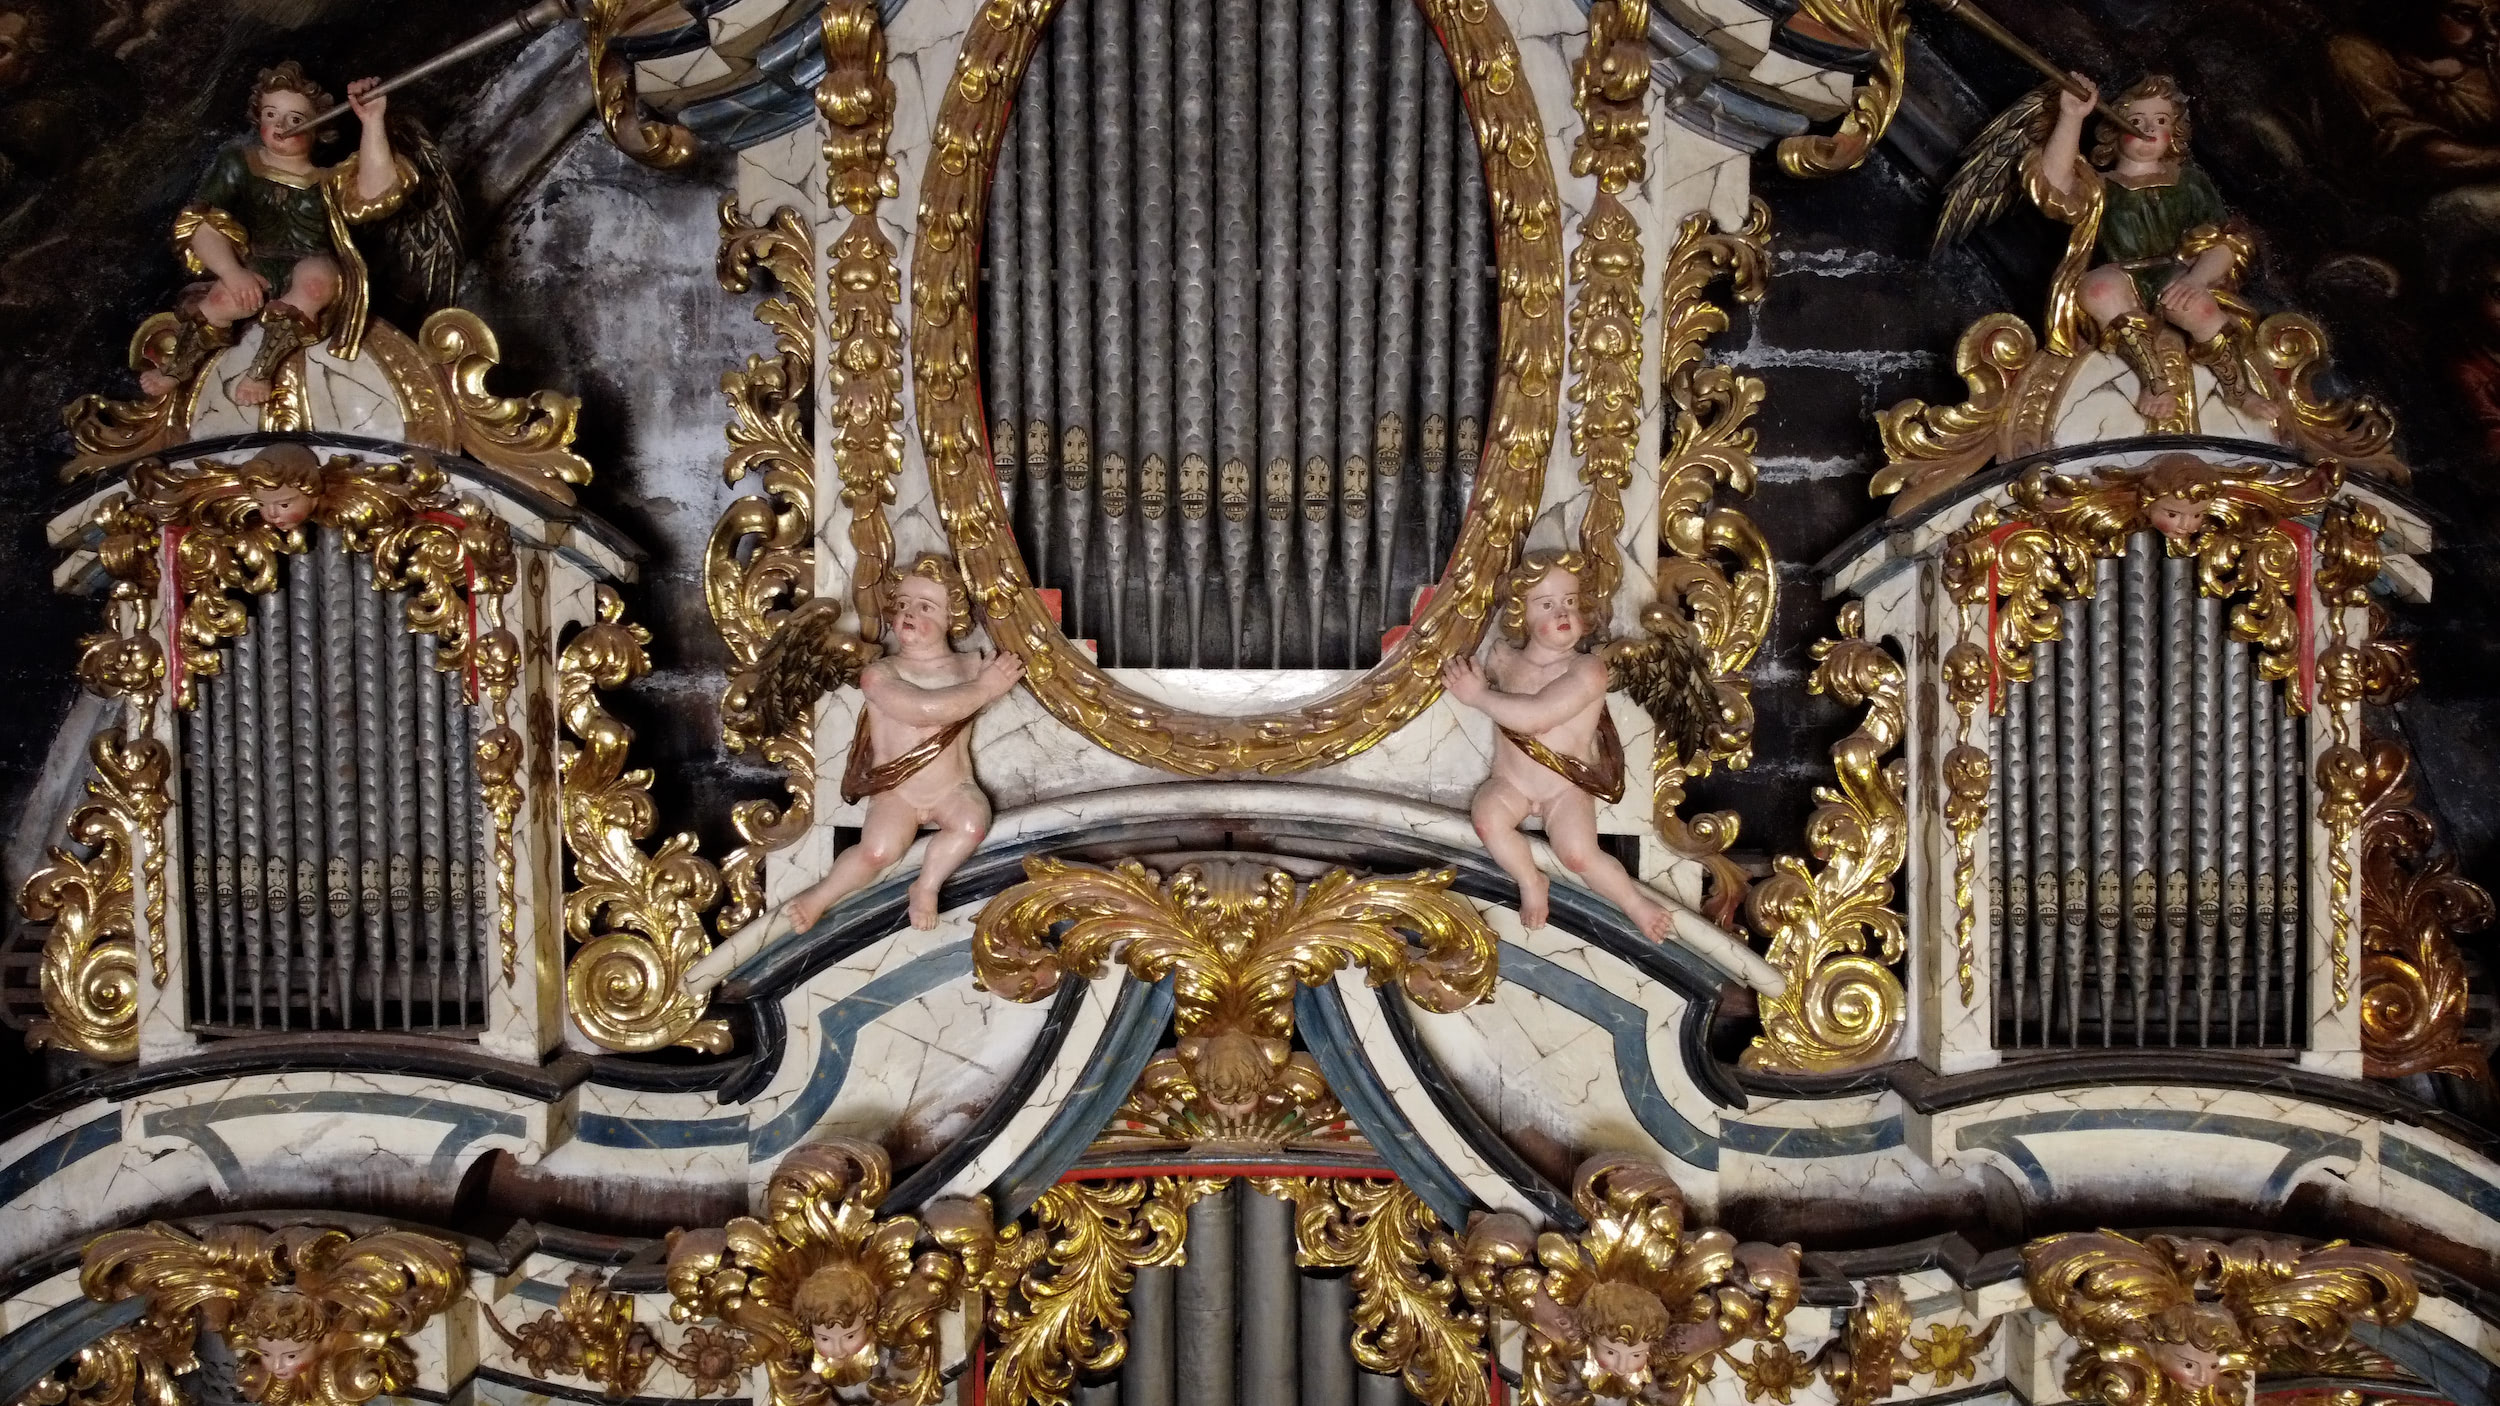 Órgano Barroco de 1719 de la basílica arciprestal de santa maría la mayor